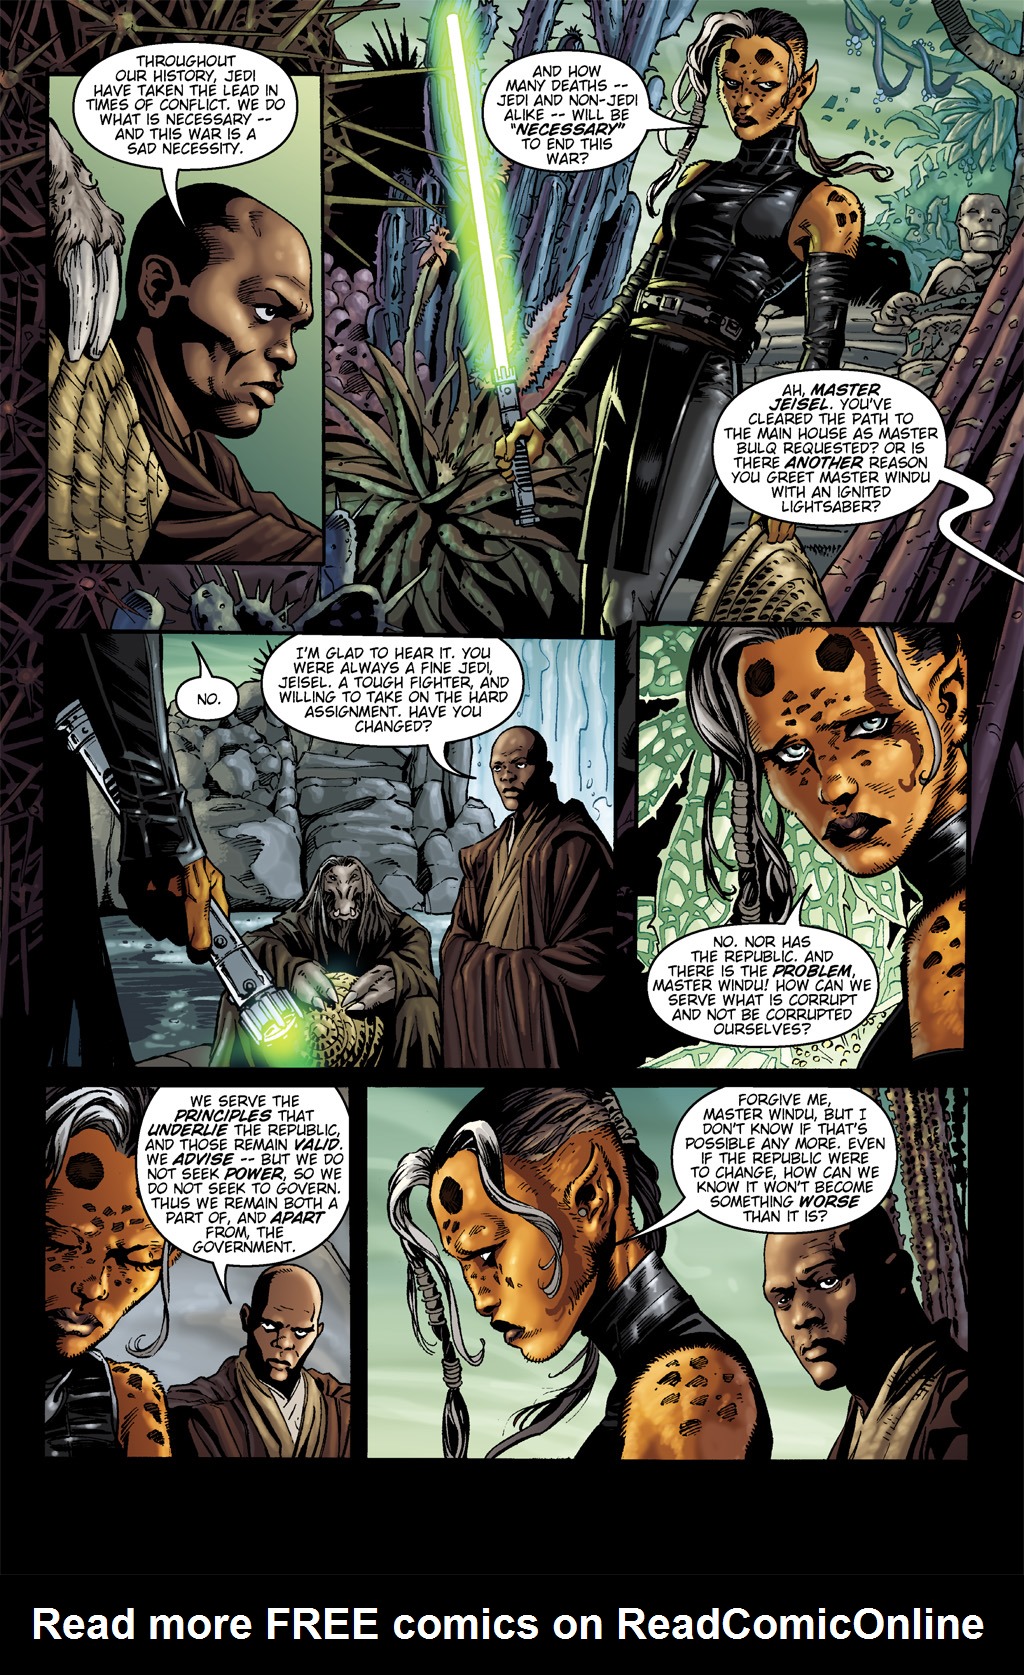 Read online Star Wars: Clone Wars comic -  Issue # TPB 1 - 100